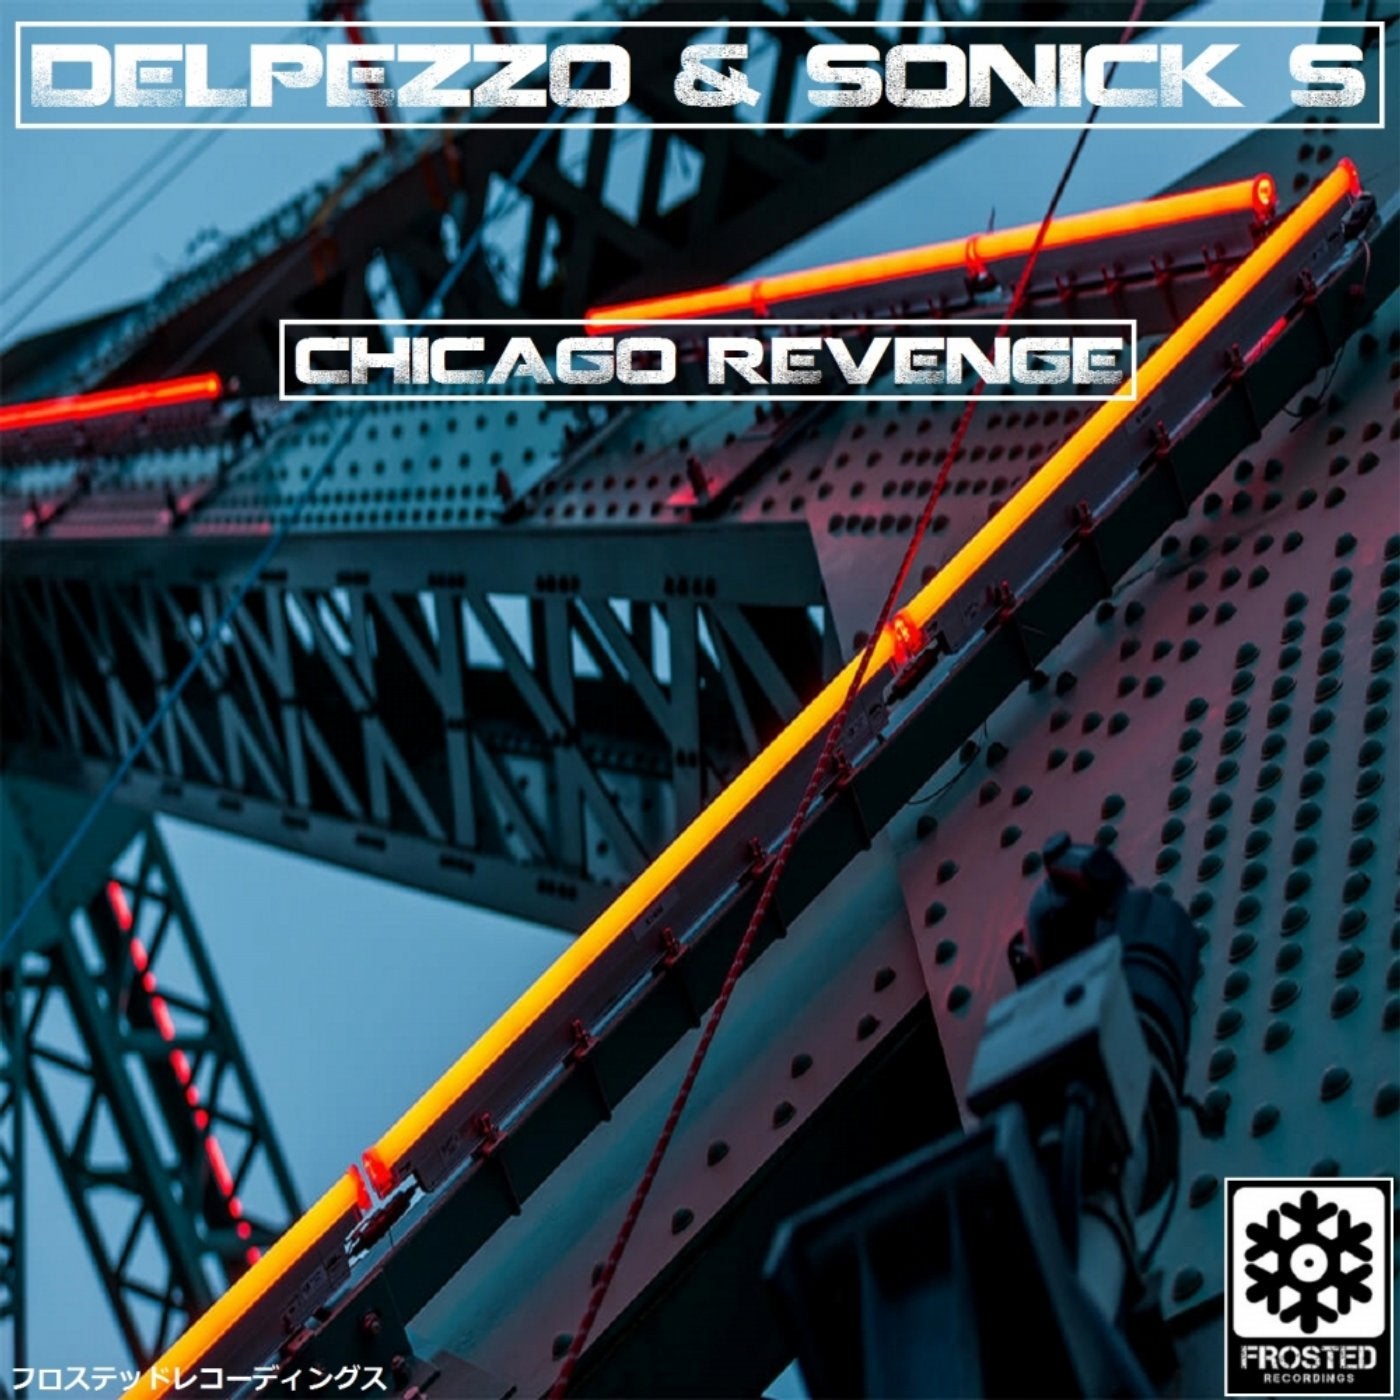 Chicago Revenge